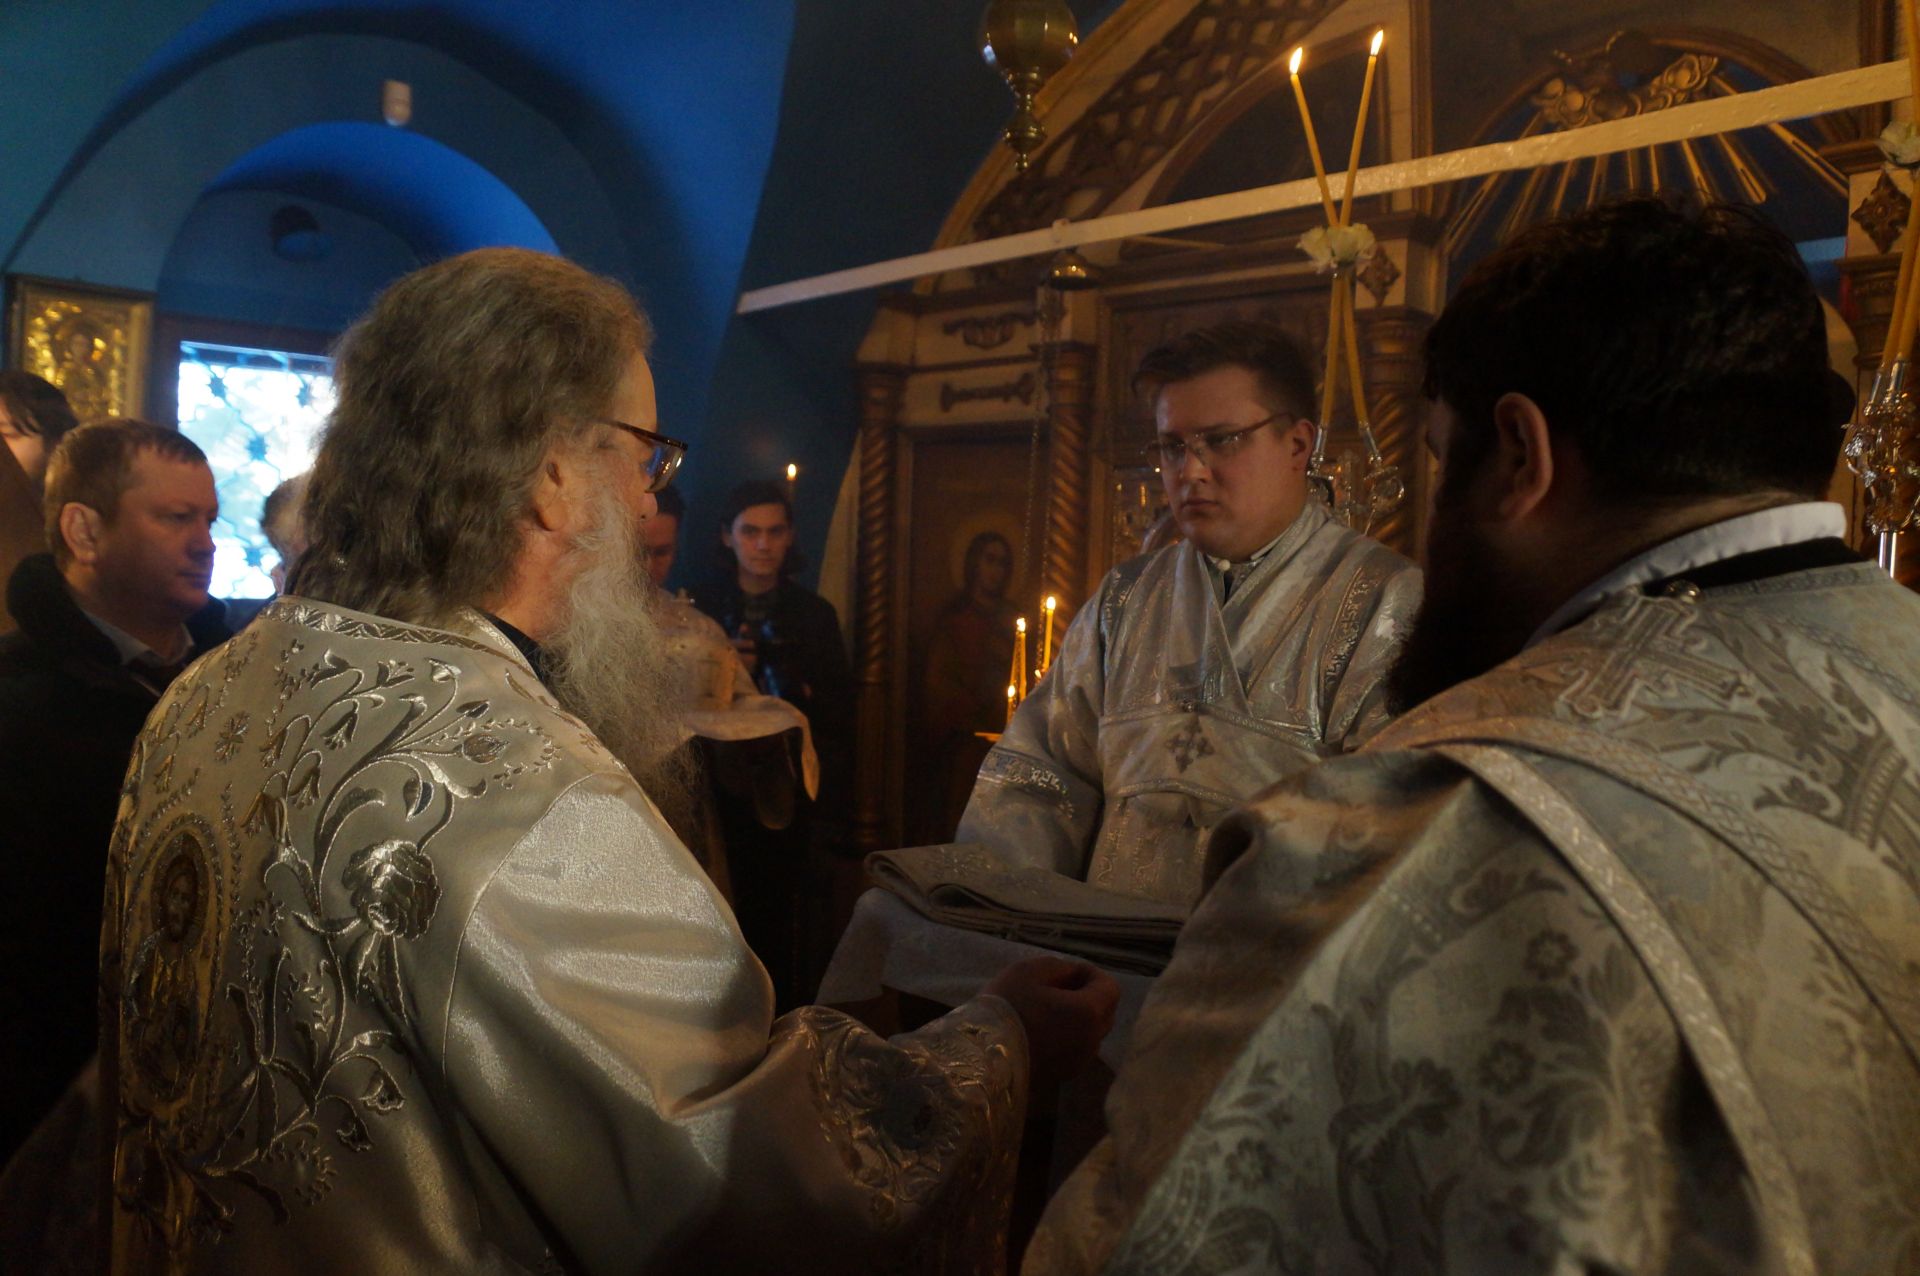 Праздник Крещения в Аркатово